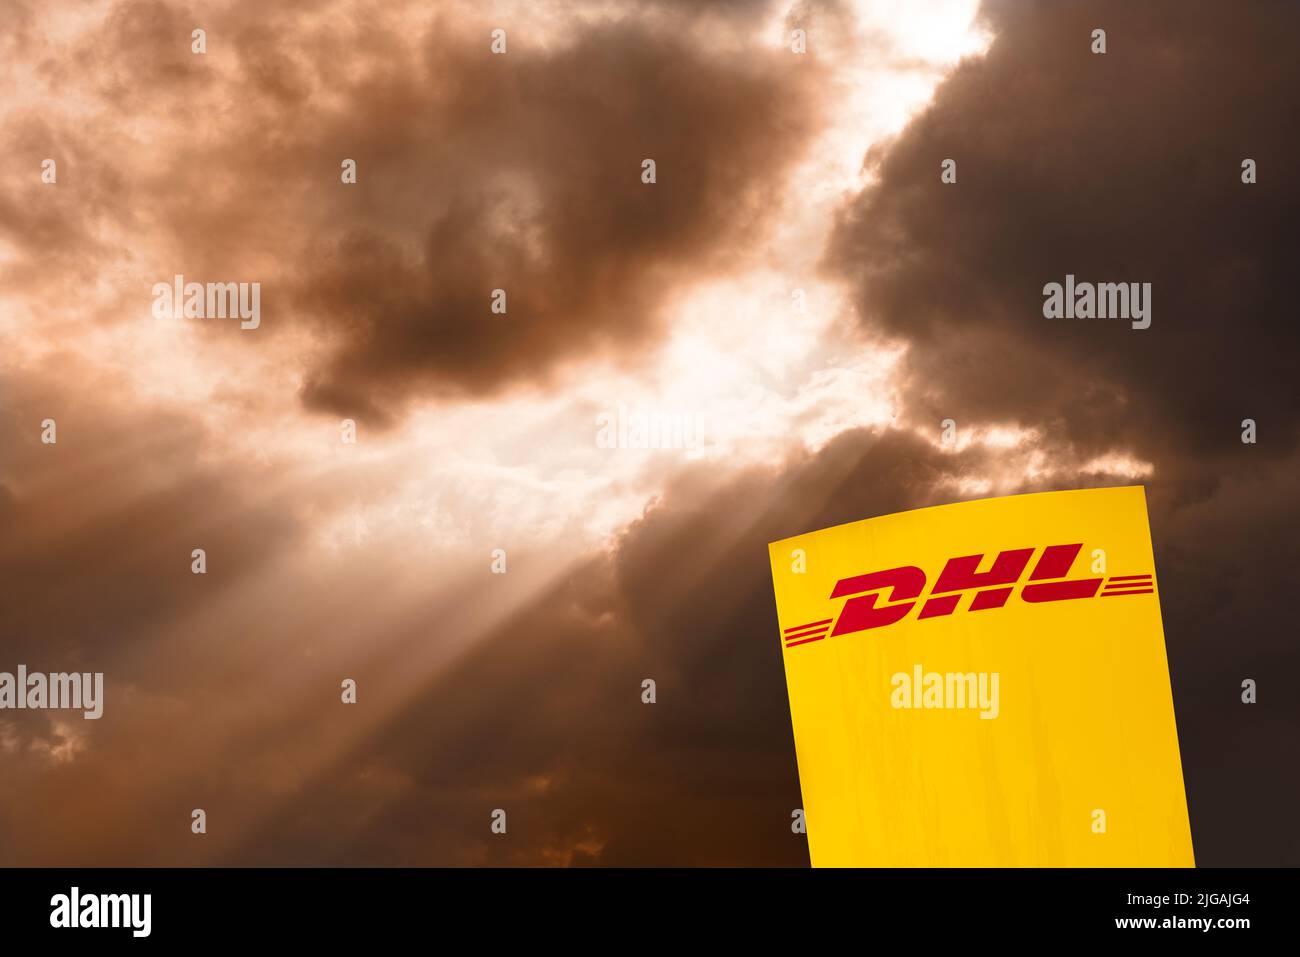 Werbeschild der Firma DHL Foto de stock